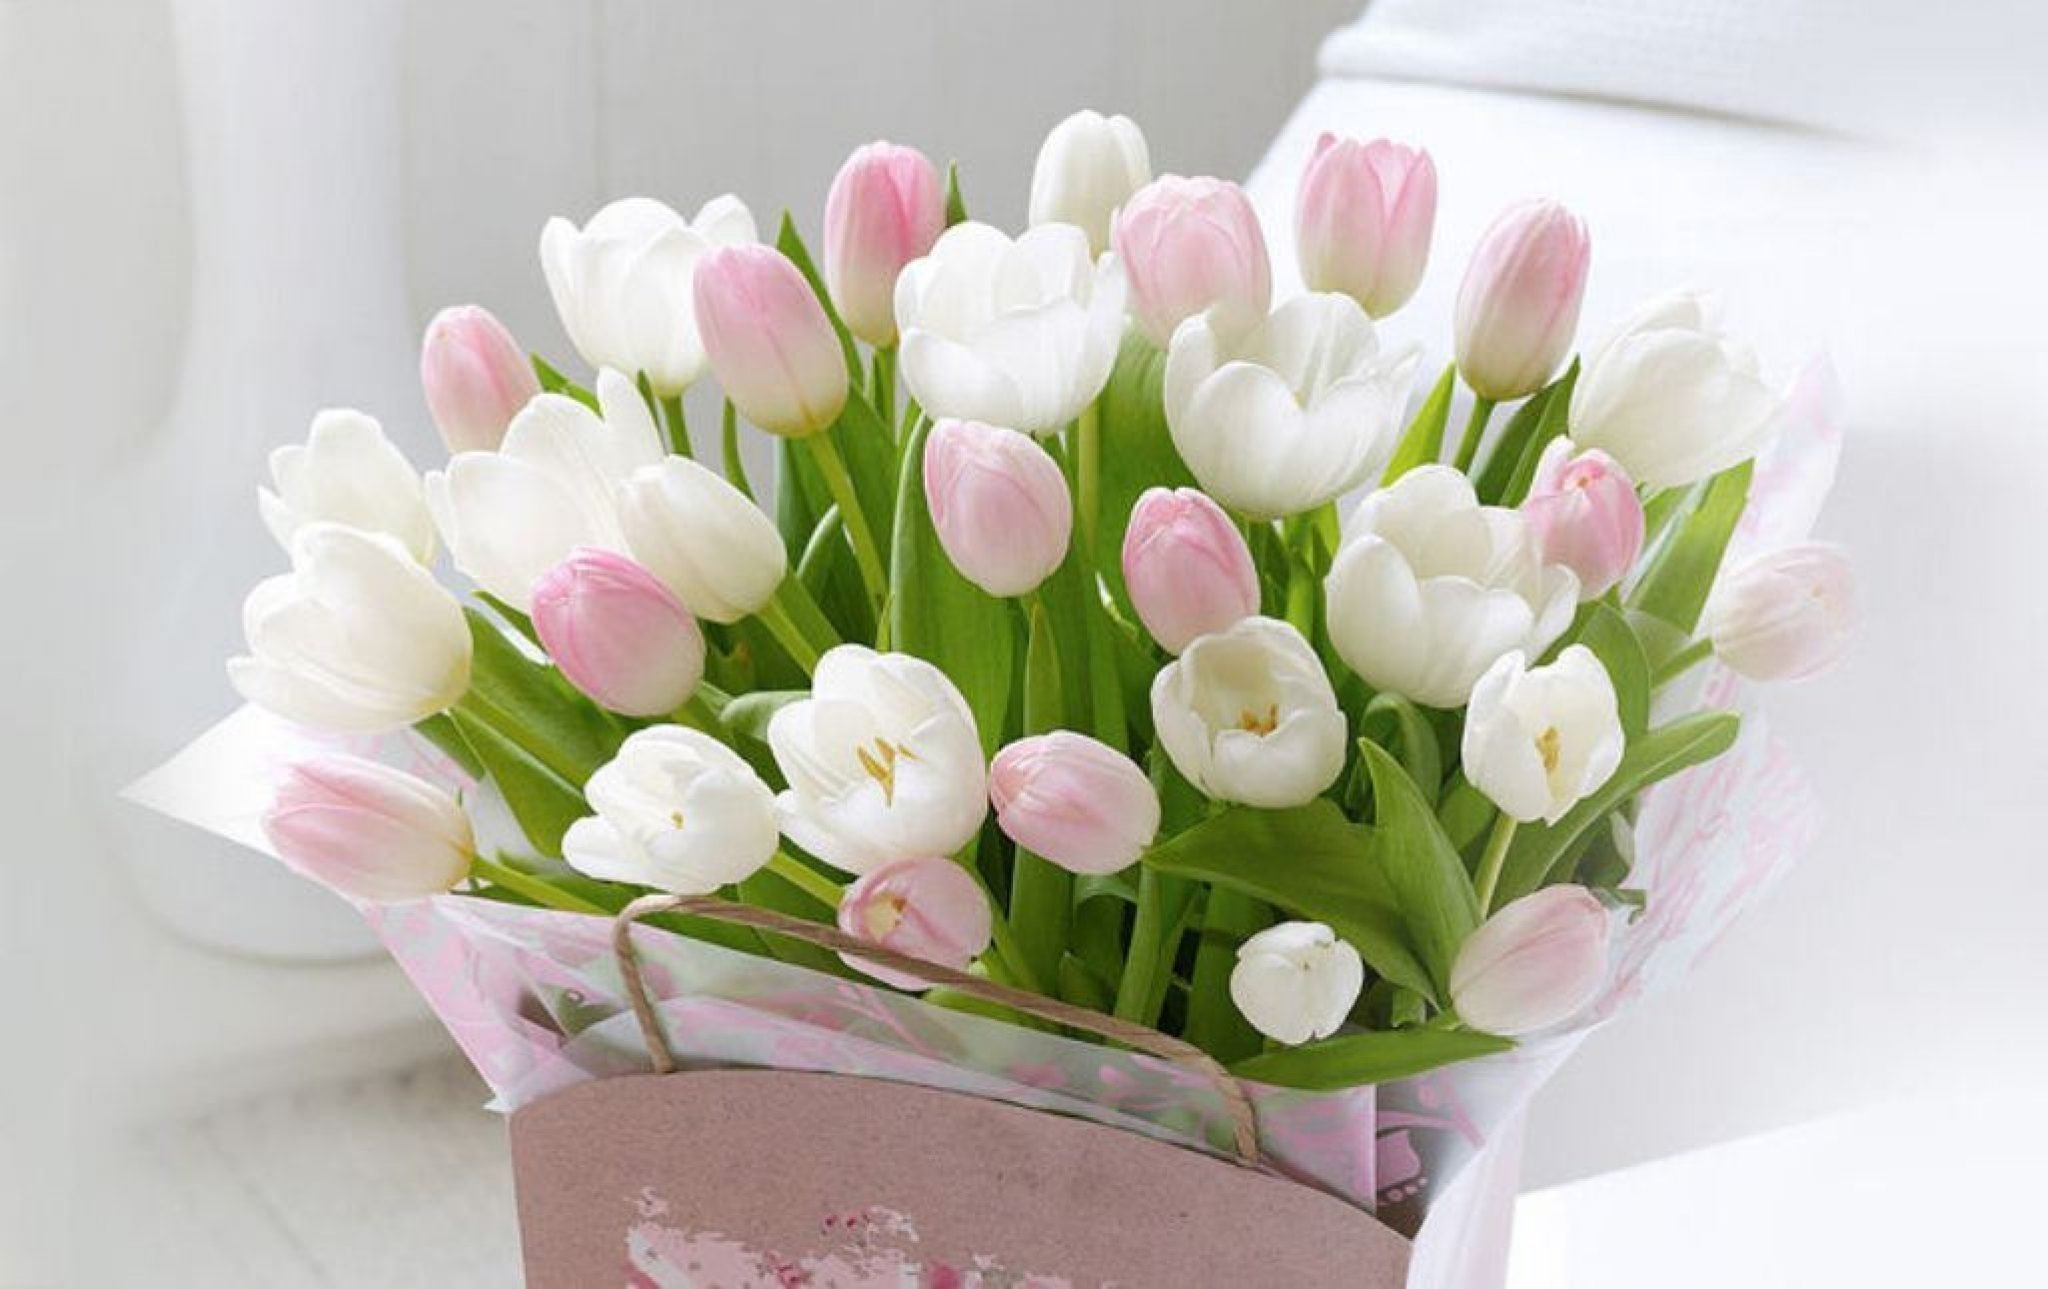 С днём рождения тюльпаны. Нежные тюльпаны. С днем рождения весенние цветы. Нежный букет тюльпанов. С праздником весны нежности очарования